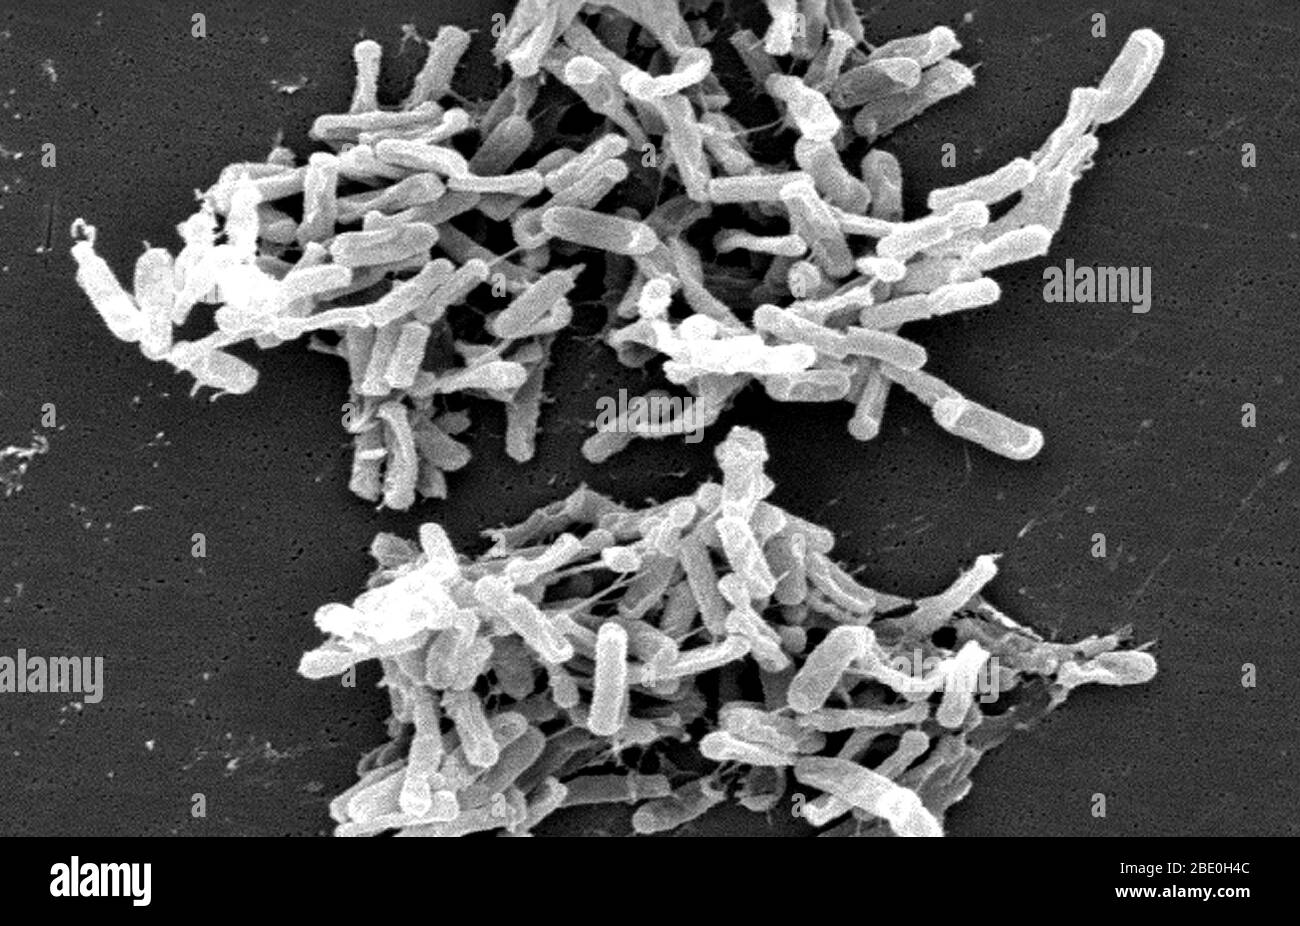 Scanning Electron Micrograph (SEM) zeigt Gram-positive Clostridium difficile Bakterien. Diese C. difficile-Organismen wurden aus einer Stuhlprobe kultiviert, die bei einem Ausbruch einer Magen-Darm-Erkrankung gewonnen wurde, und mit einem .1µm-Filter extrahiert. C. difficile verursacht Durchfall und ernstere Darmerkrankungen wie Kolitis. Stockfoto